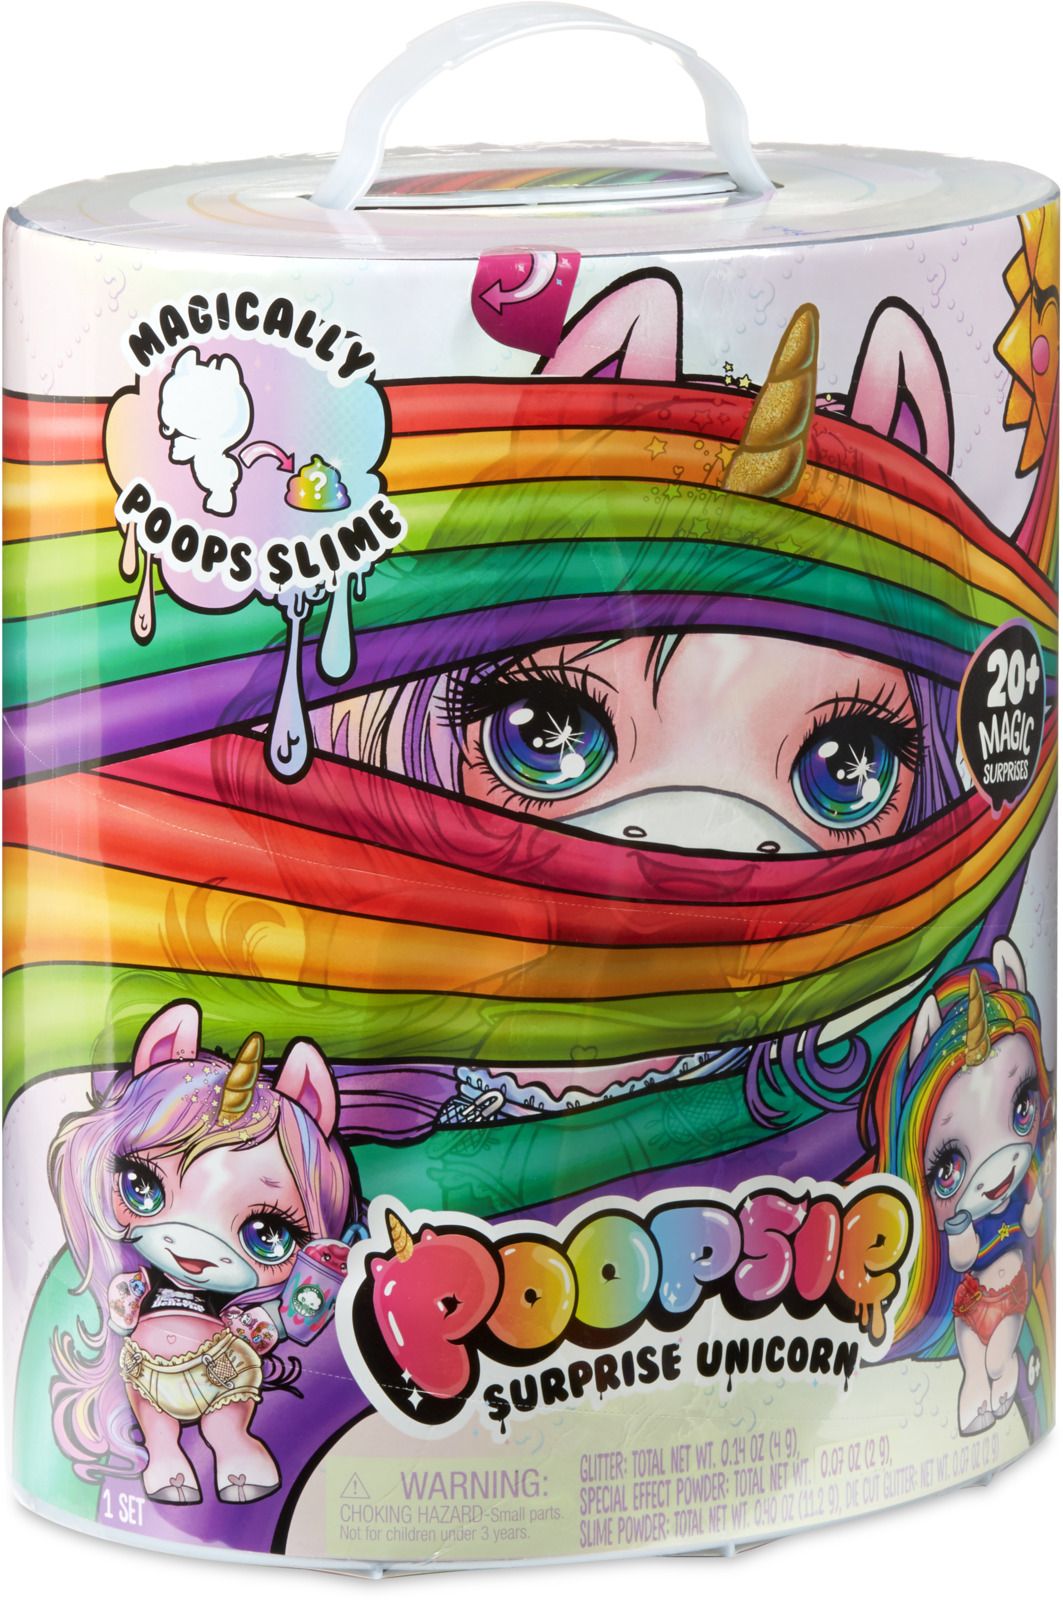 фото Интерактивная игрушка Poopsie "Единорог", 551447, розовый Poopsie surprise unicorn